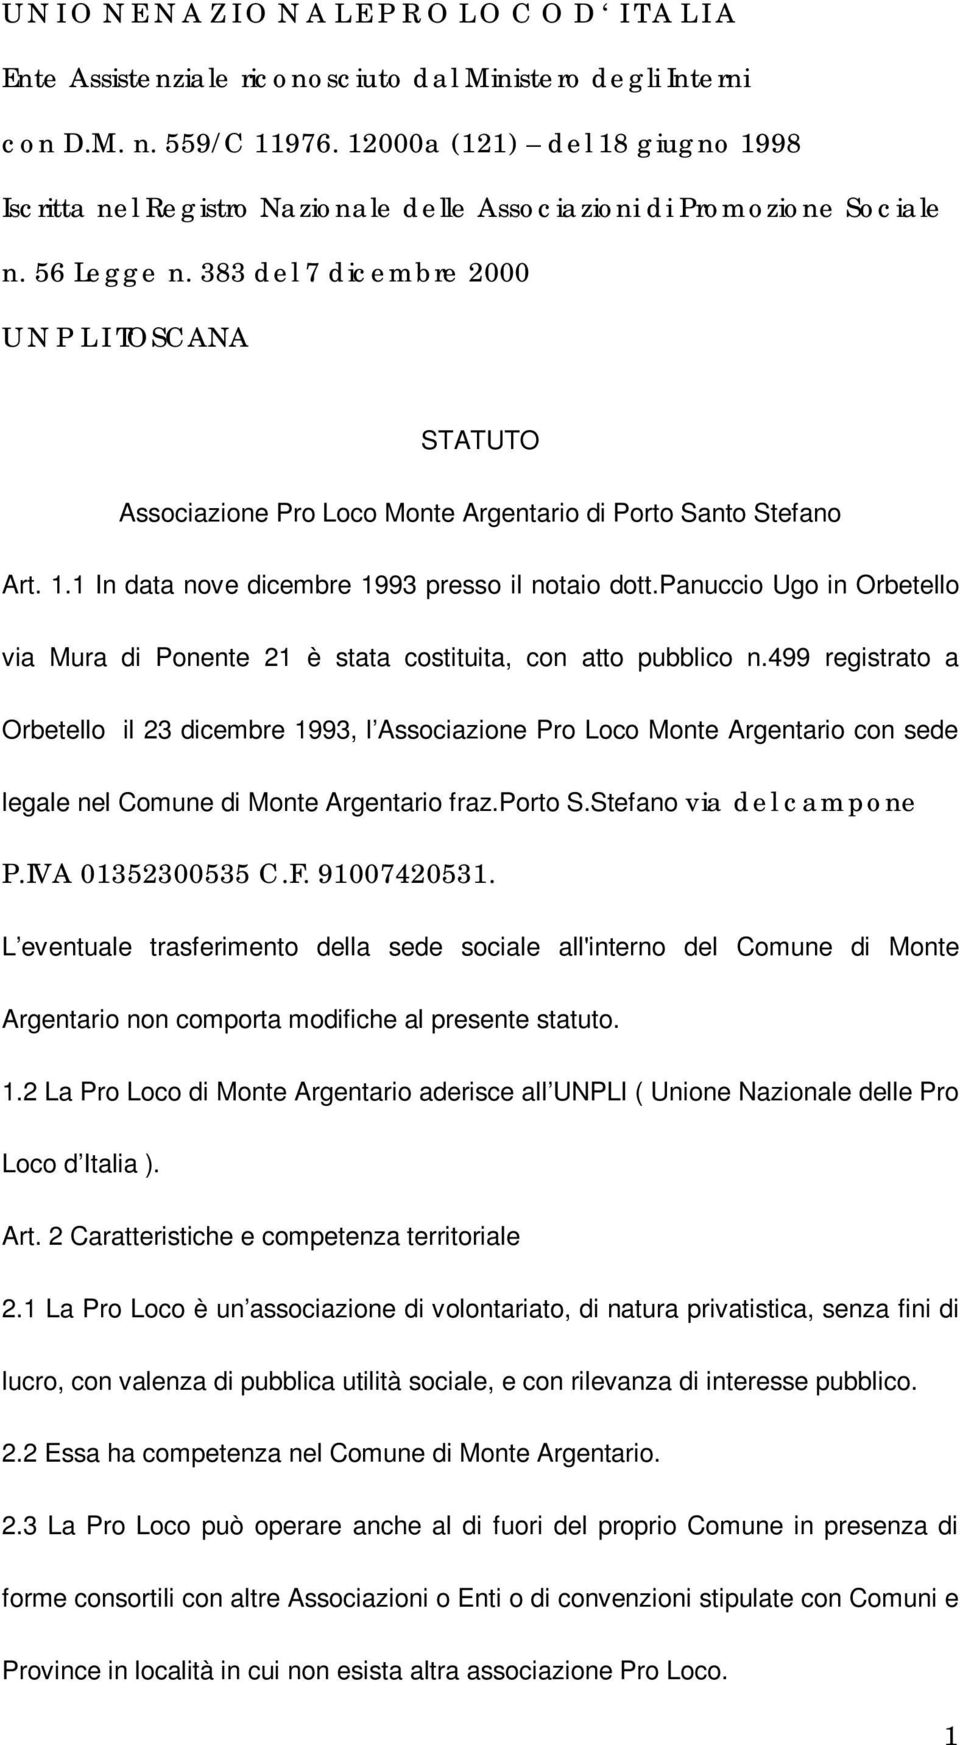 383 del 7 dicembre 2000 U N P L I TOSCANA STATUTO Associazione Pro Loco Monte Argentario di Porto Santo Stefano Art. 1.1 In data nove dicembre 1993 presso il notaio dott.